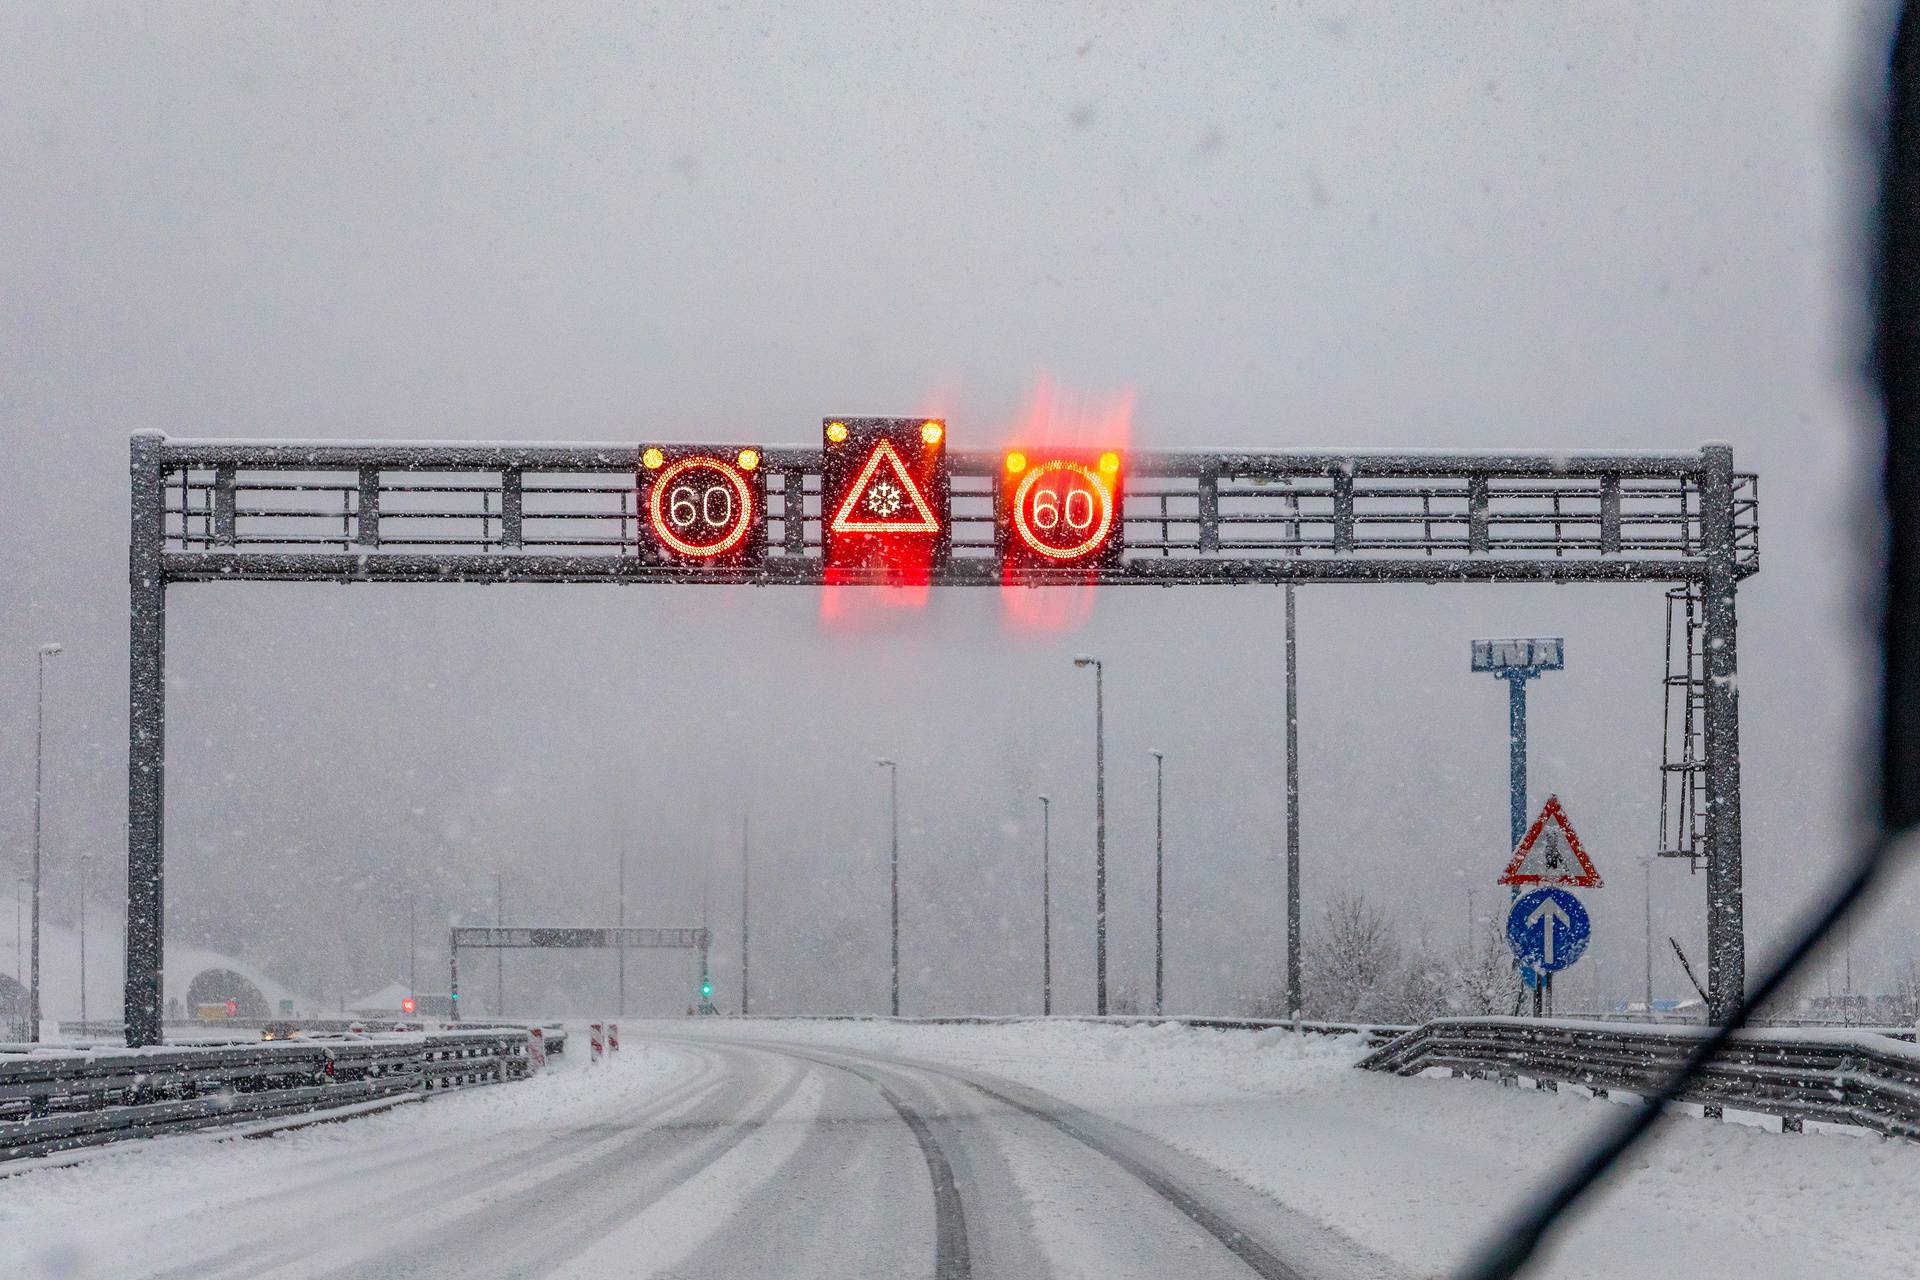 Gusti snijeg i poledica otežavaju prometovanje na autocesti A6 Zagreb - Rijeka